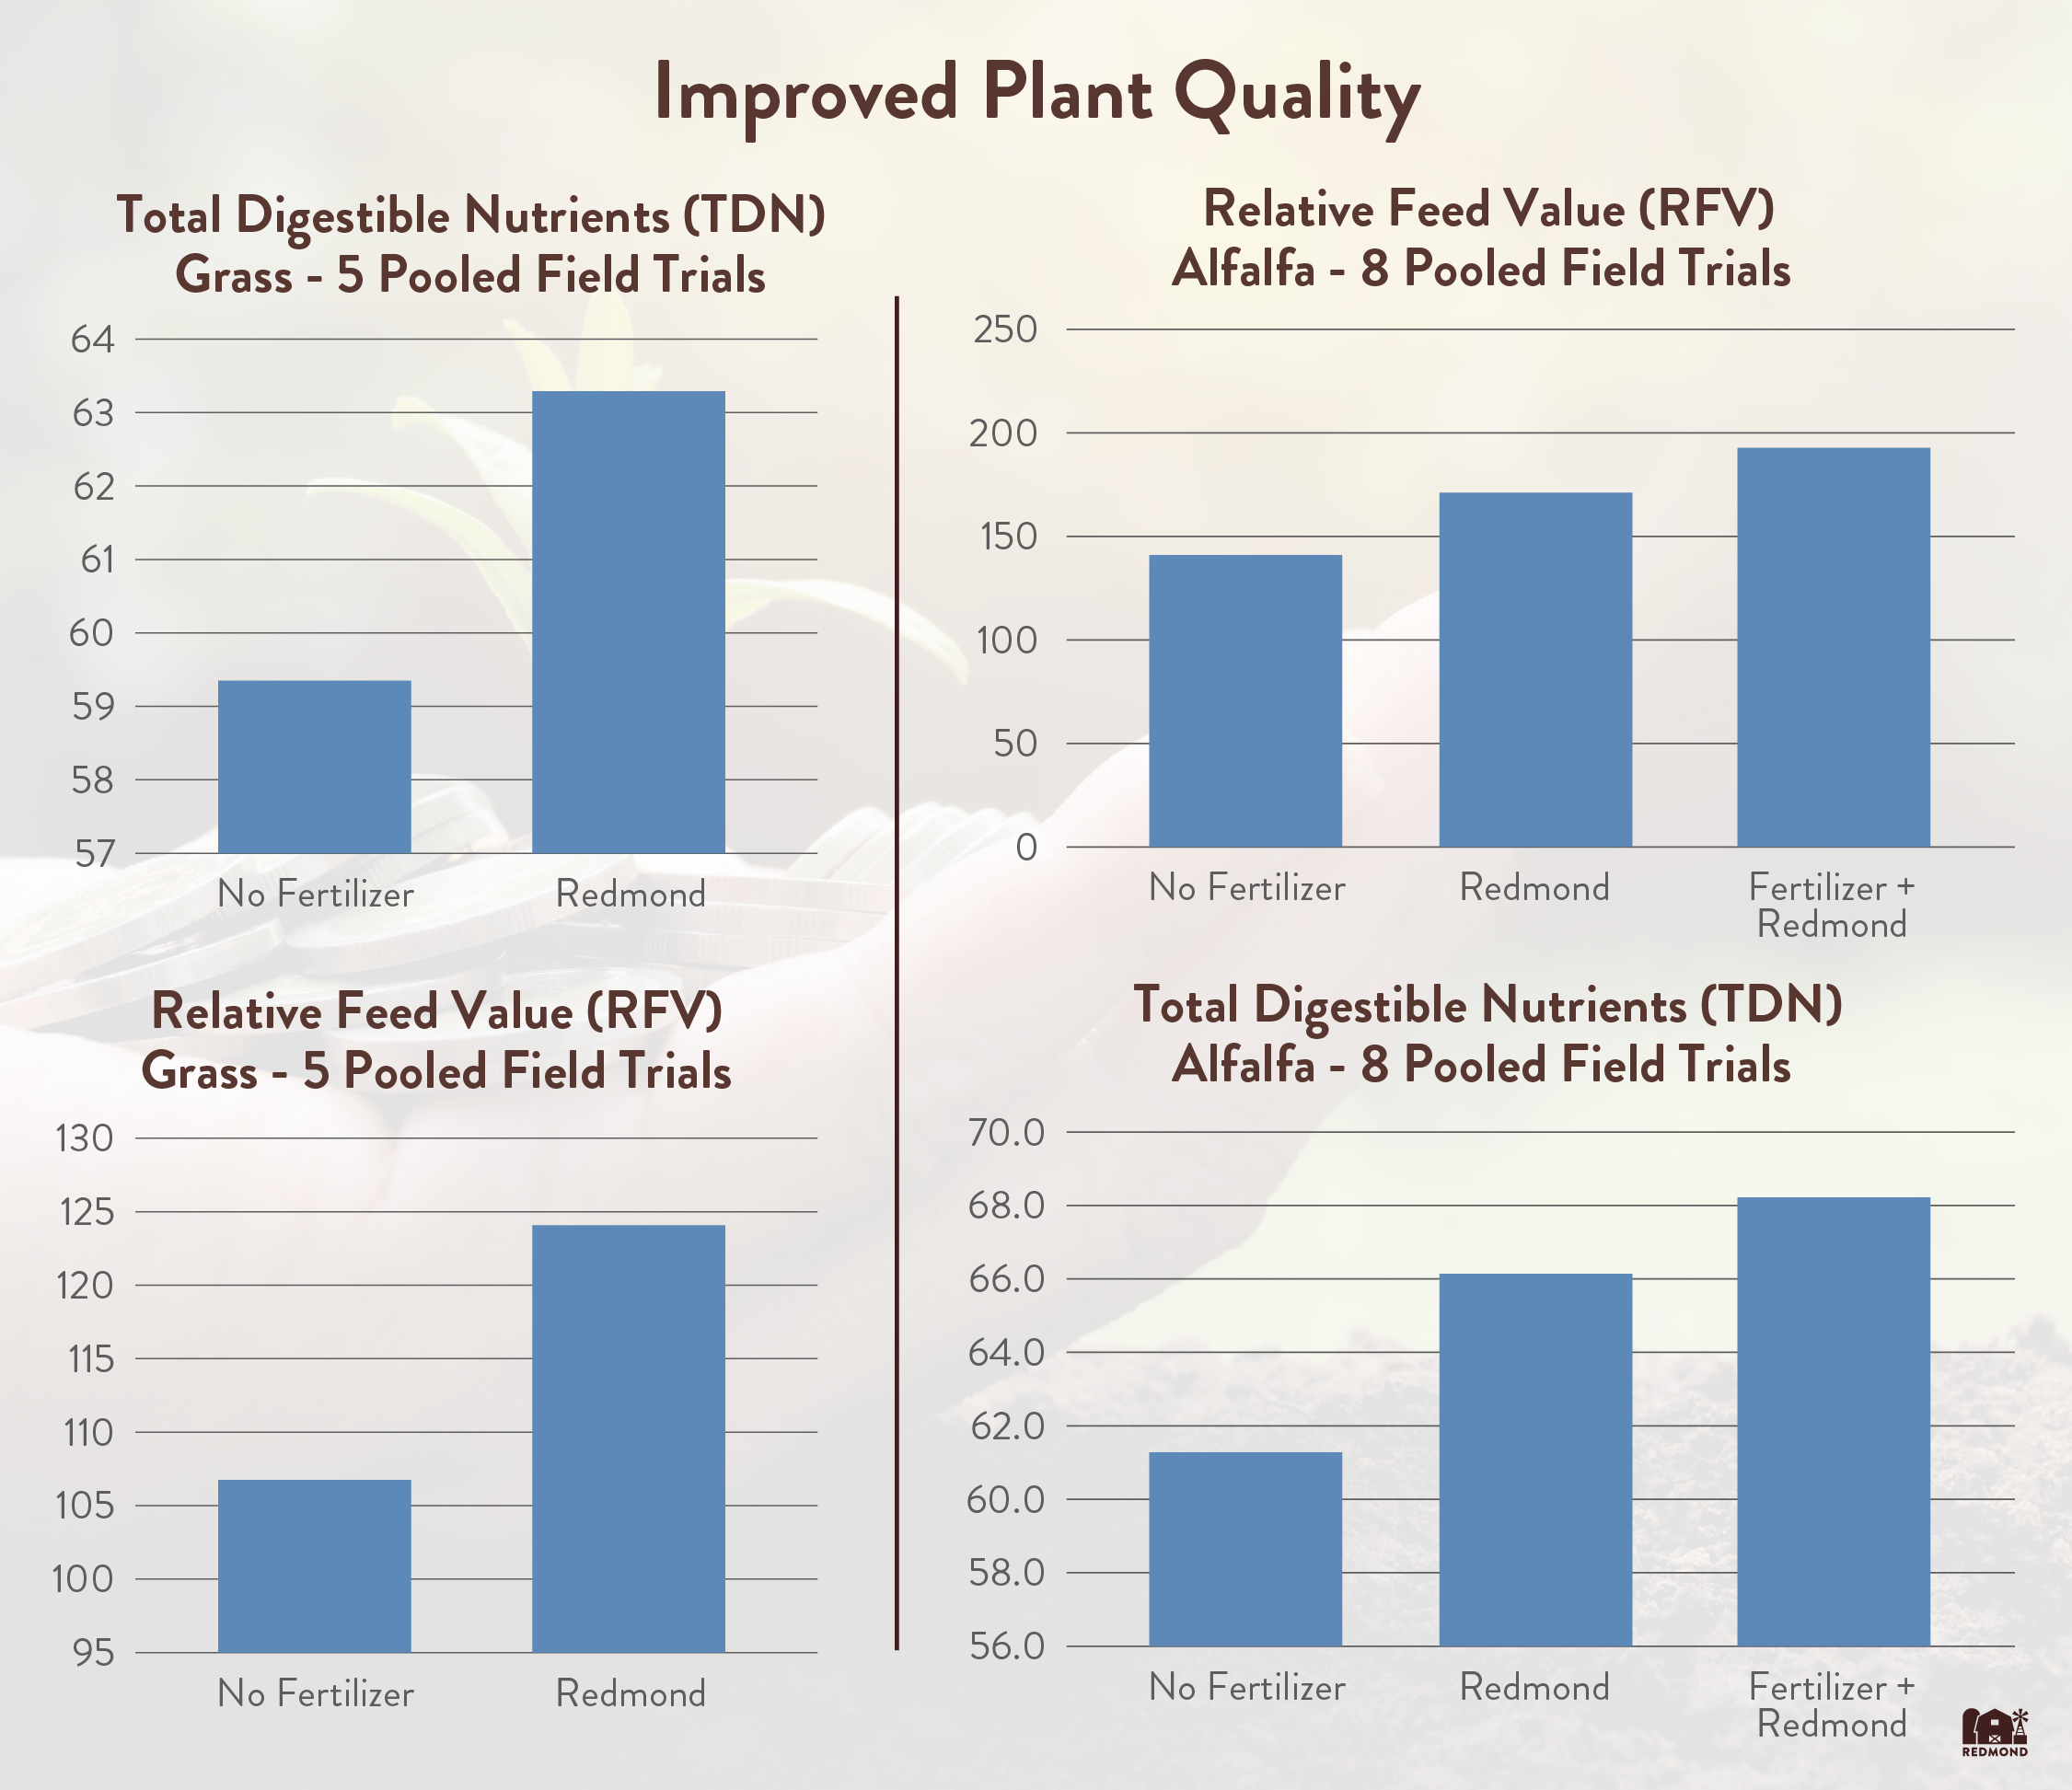 Redmond improves plant nutrients levels